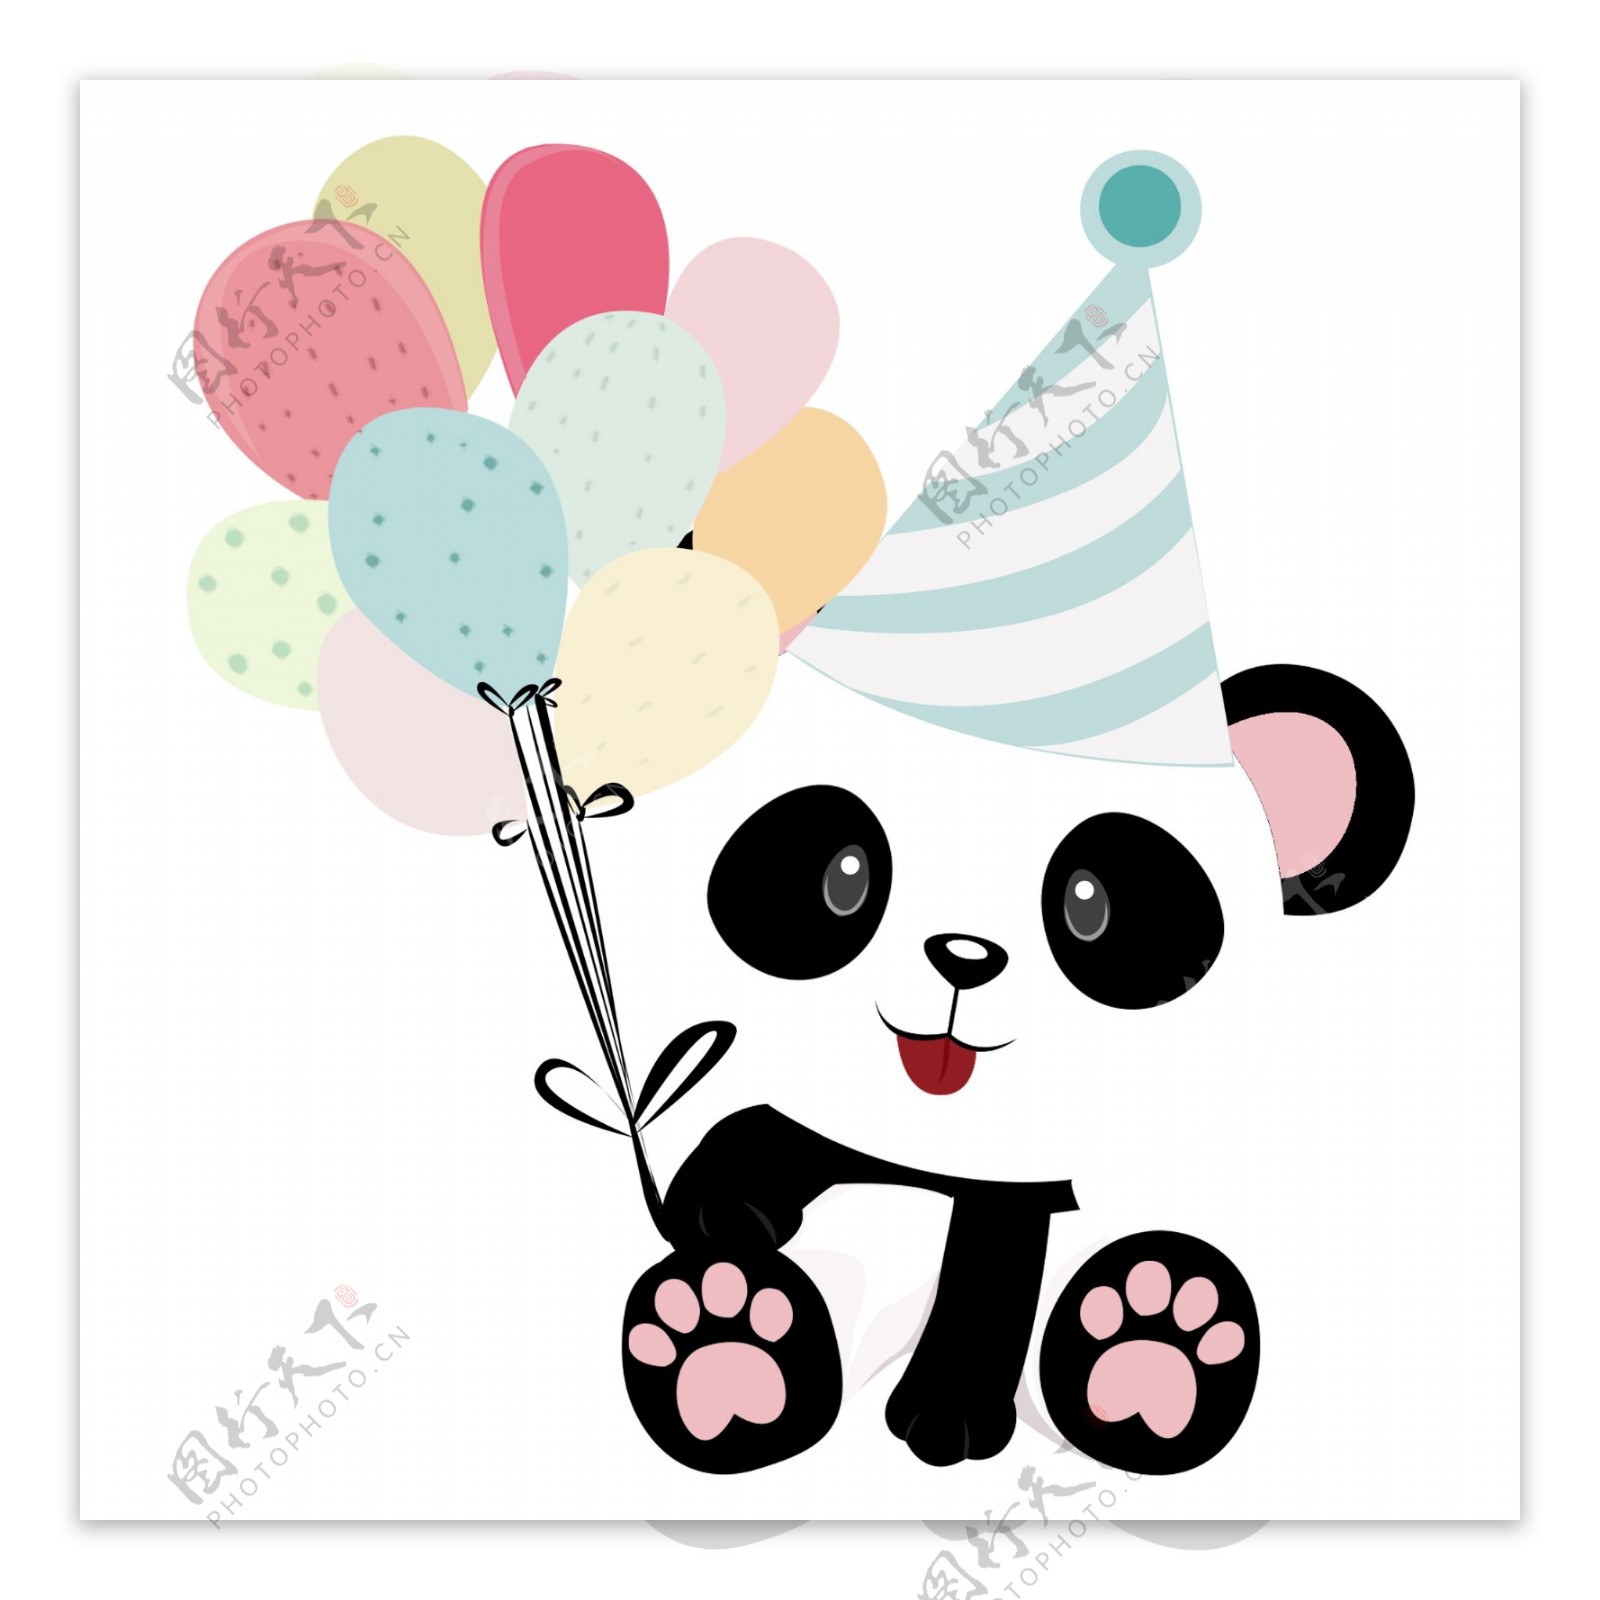 呆萌可爱拿着气球过生日的熊猫可商用元素